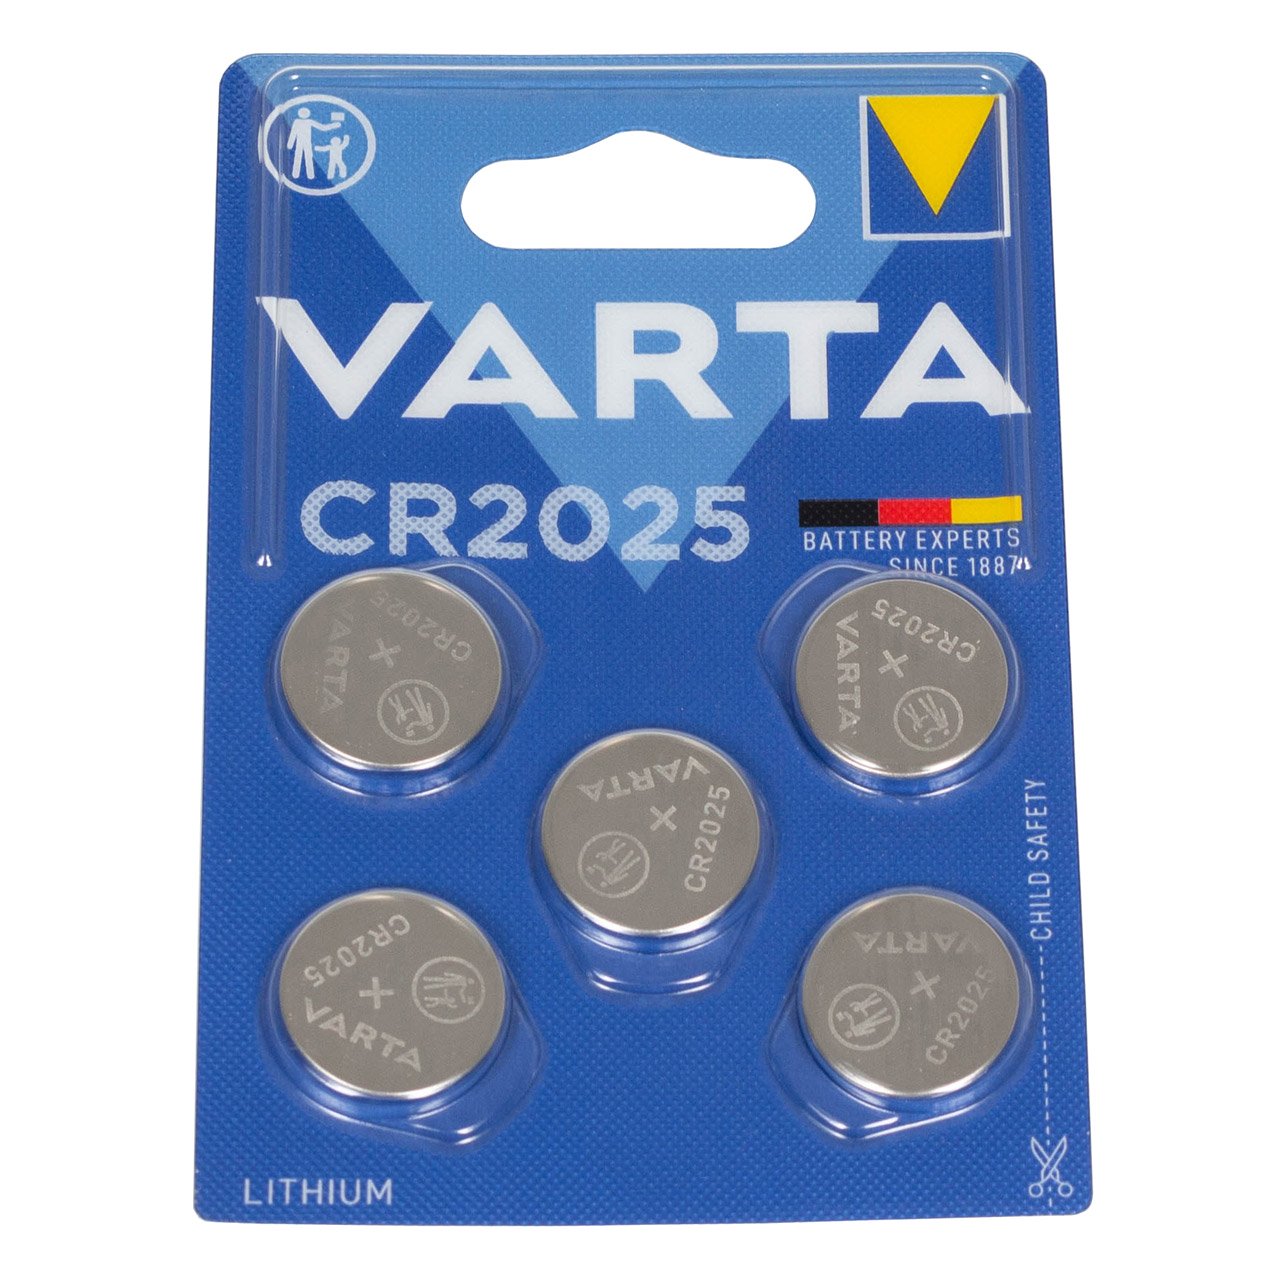 5x VARTA Lithium 3V CR2025 Knopfzelle Knopfbatterie Batterie (MHD 09.2033)